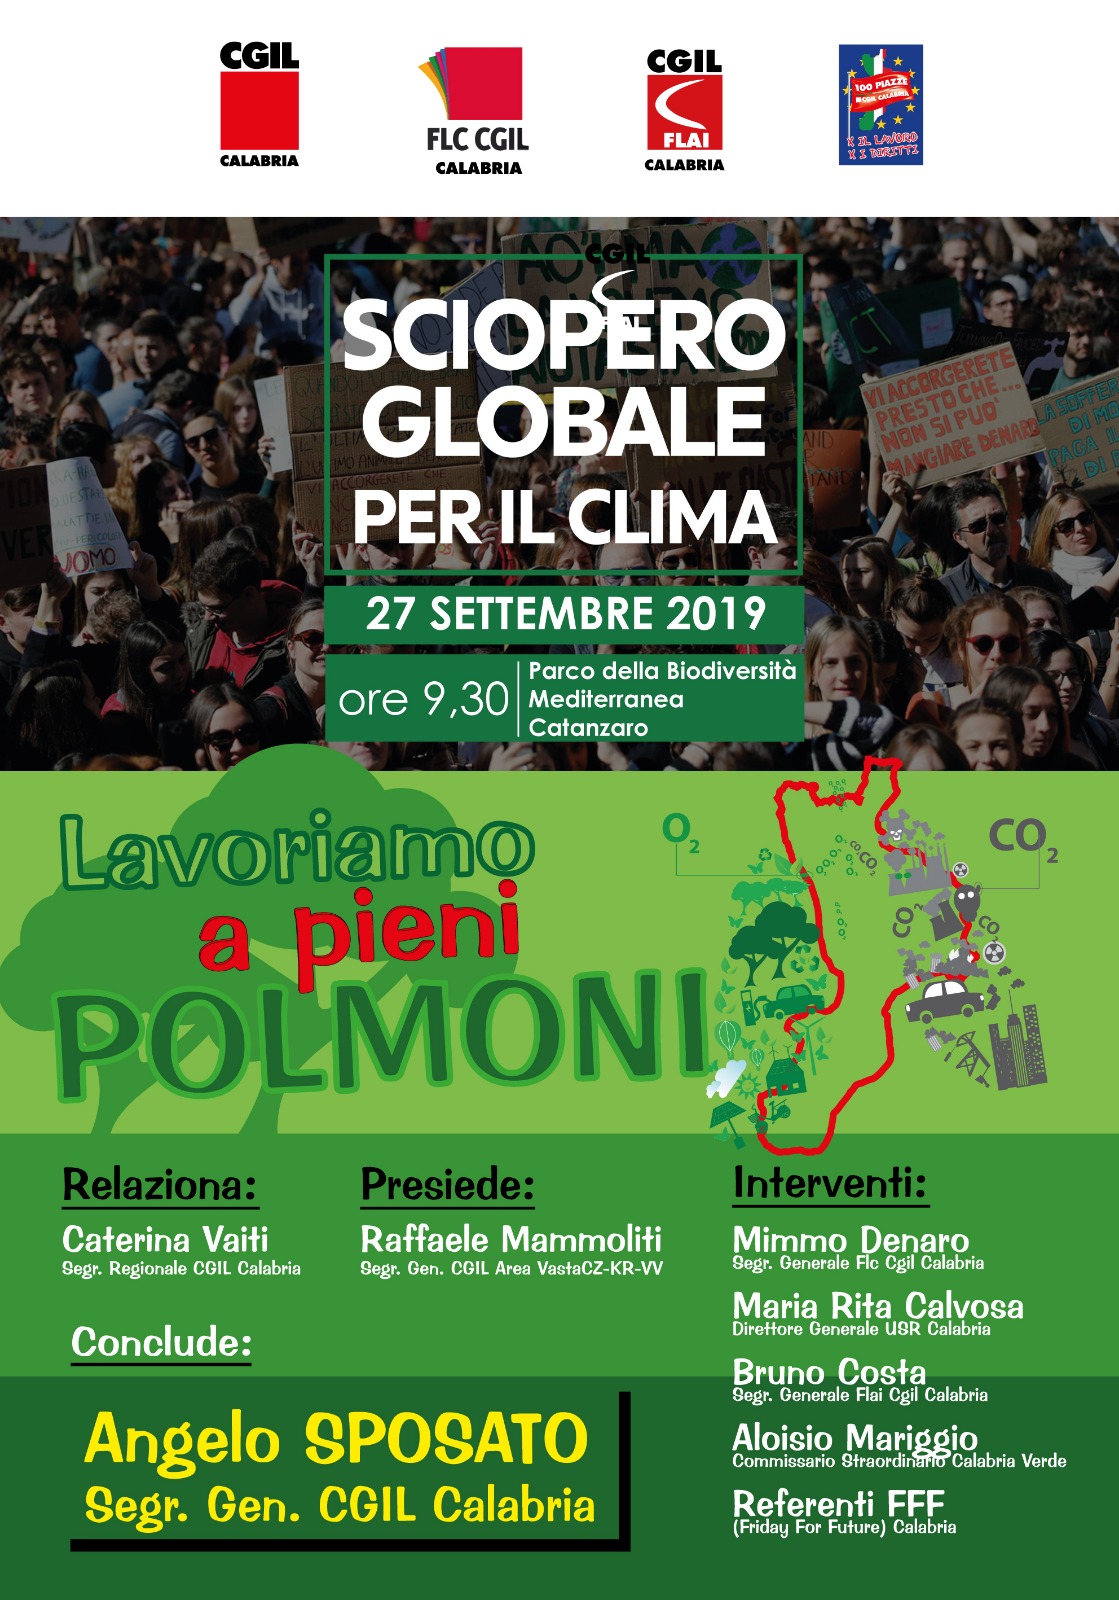 27 settembre 2019, sciopero globale per il clima a Catanzaro